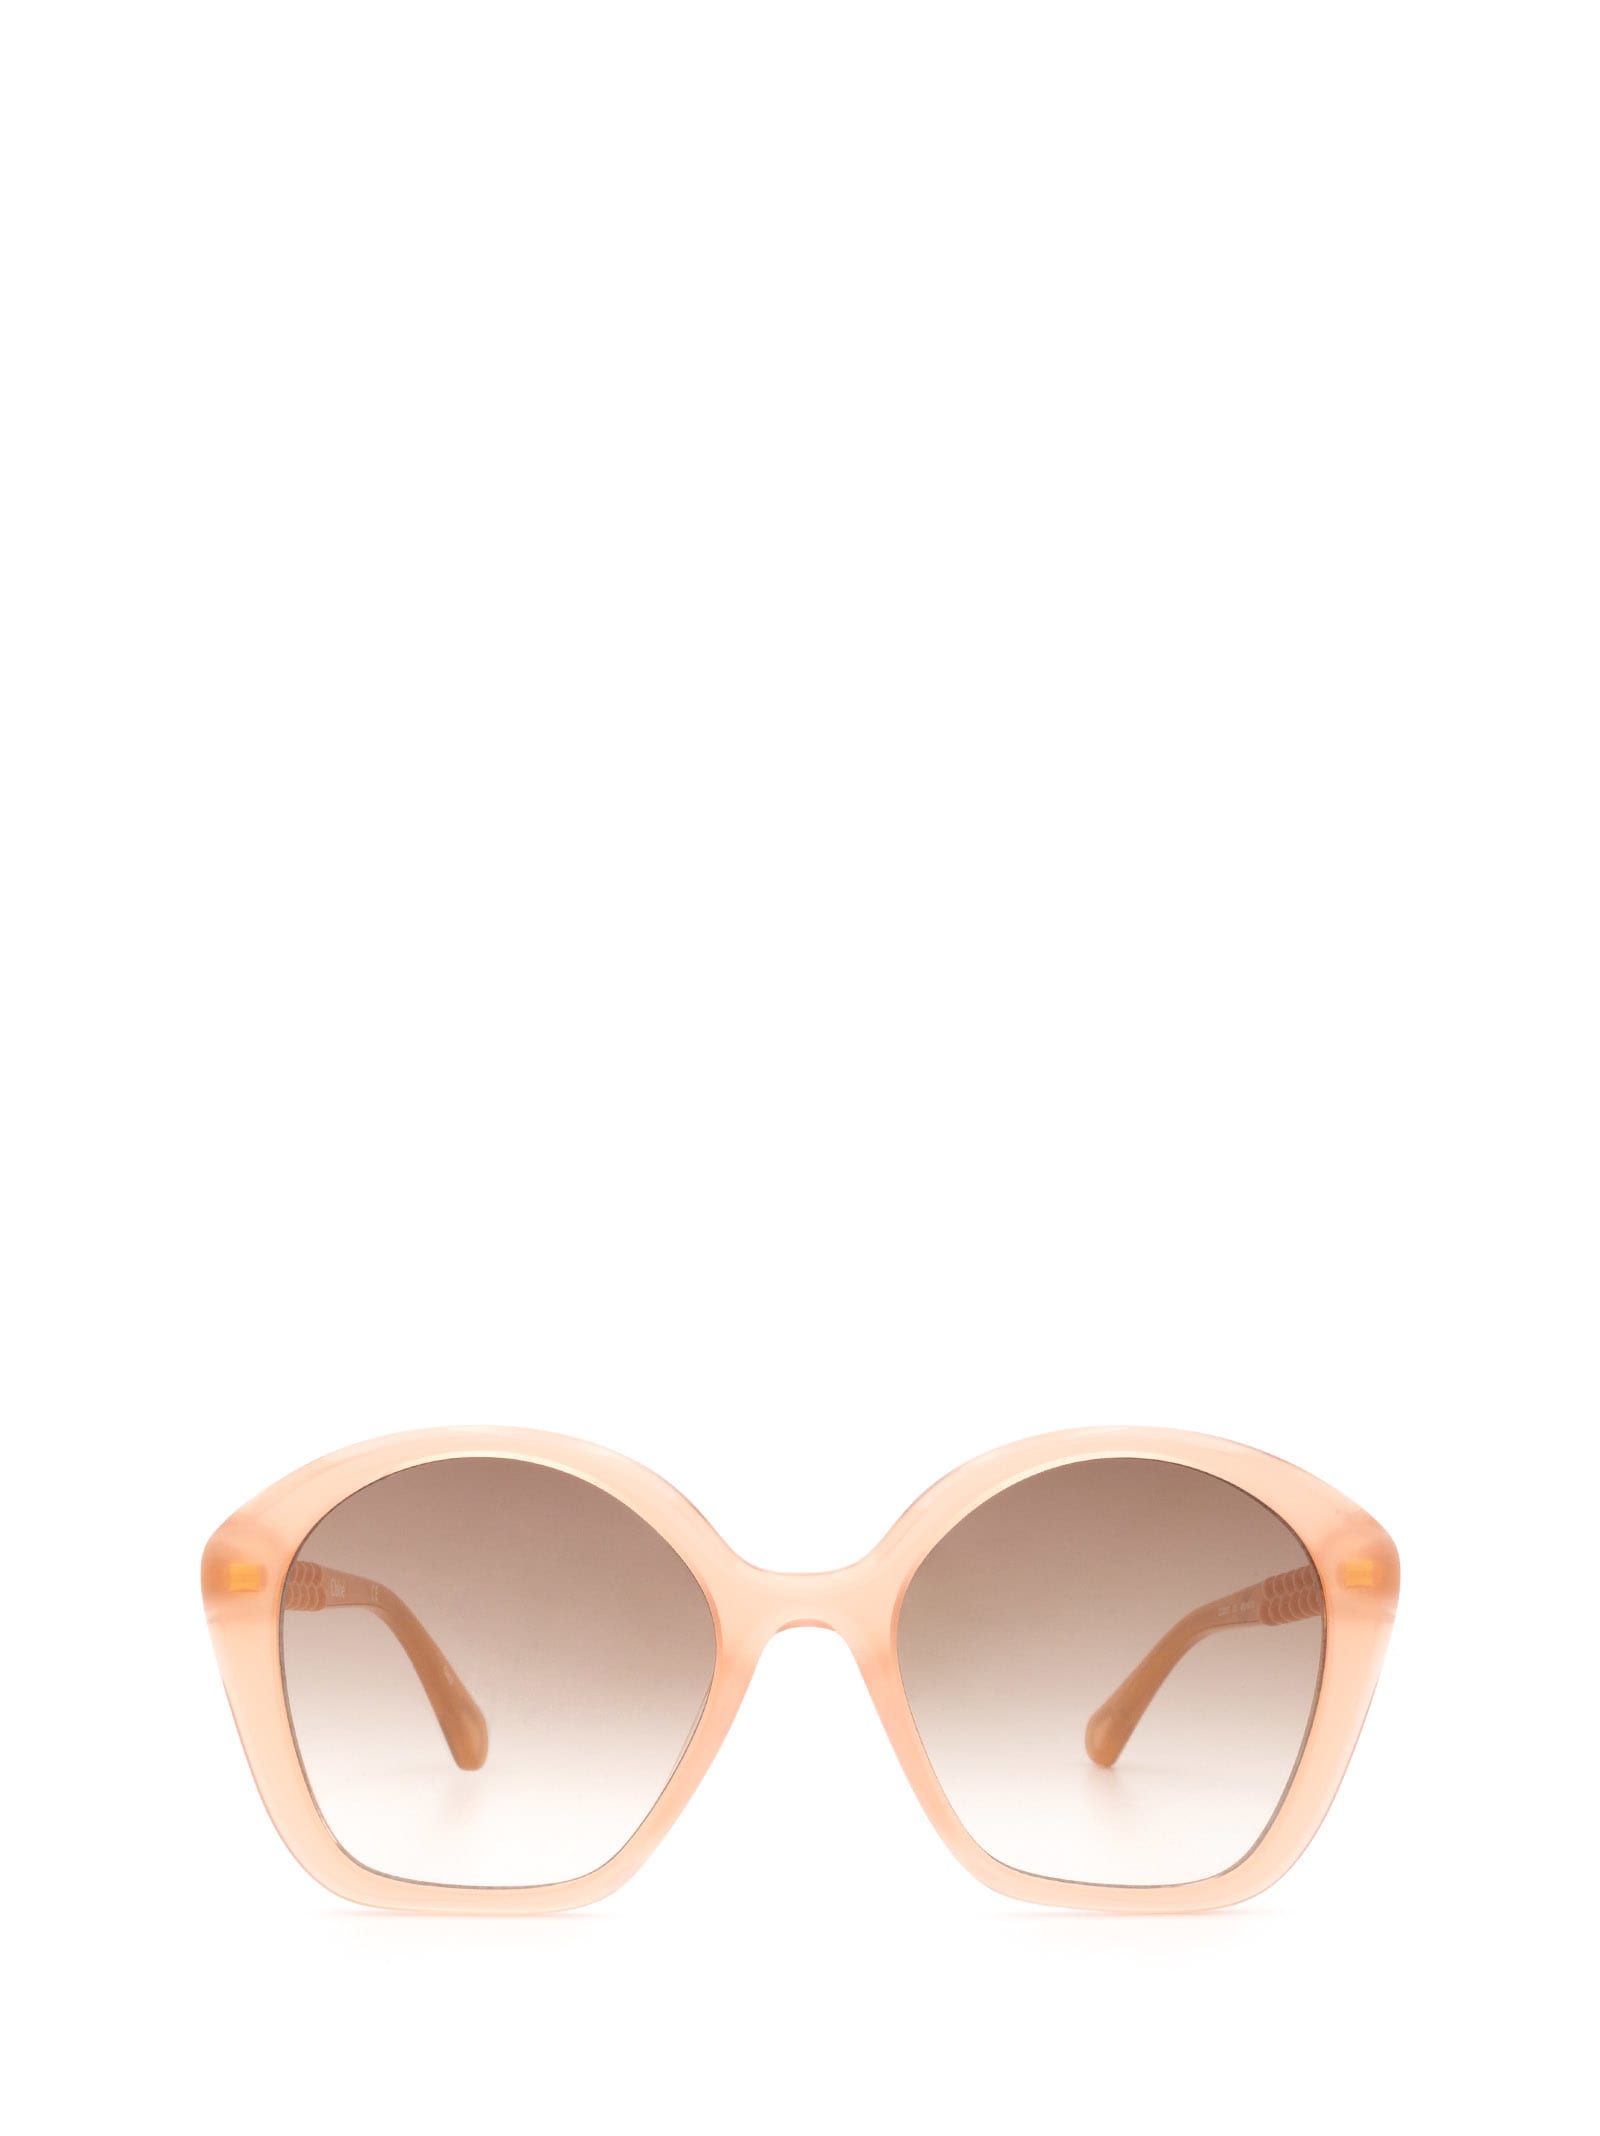 Chloé Chloé Cc0001s Nude Sunglasses